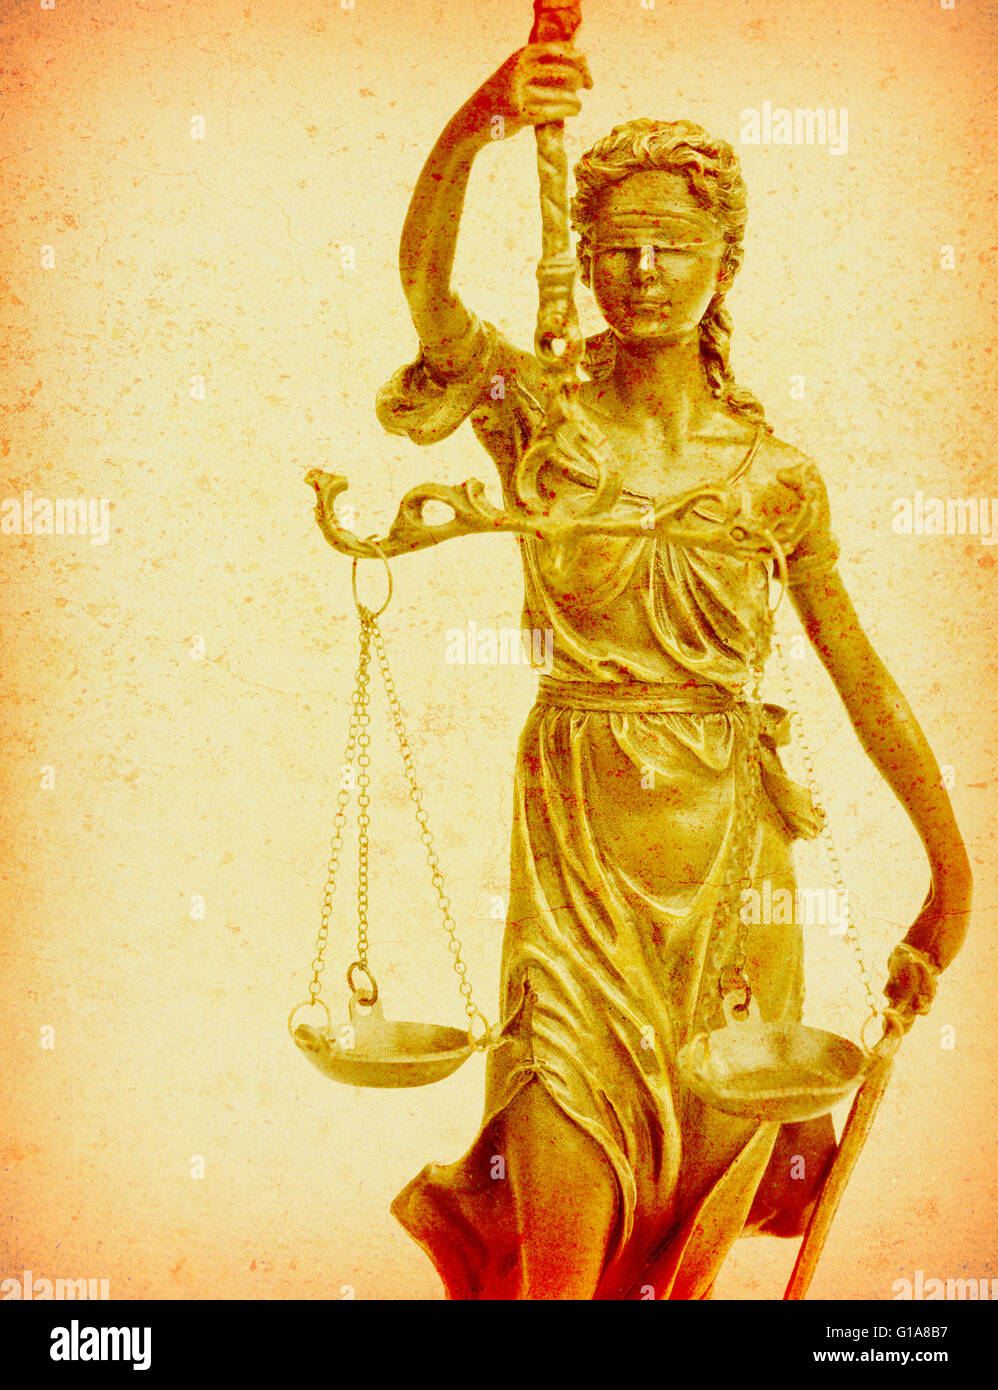 Statua di giustizia sulla vecchia carta sfondo, nozione di diritto Foto Stock